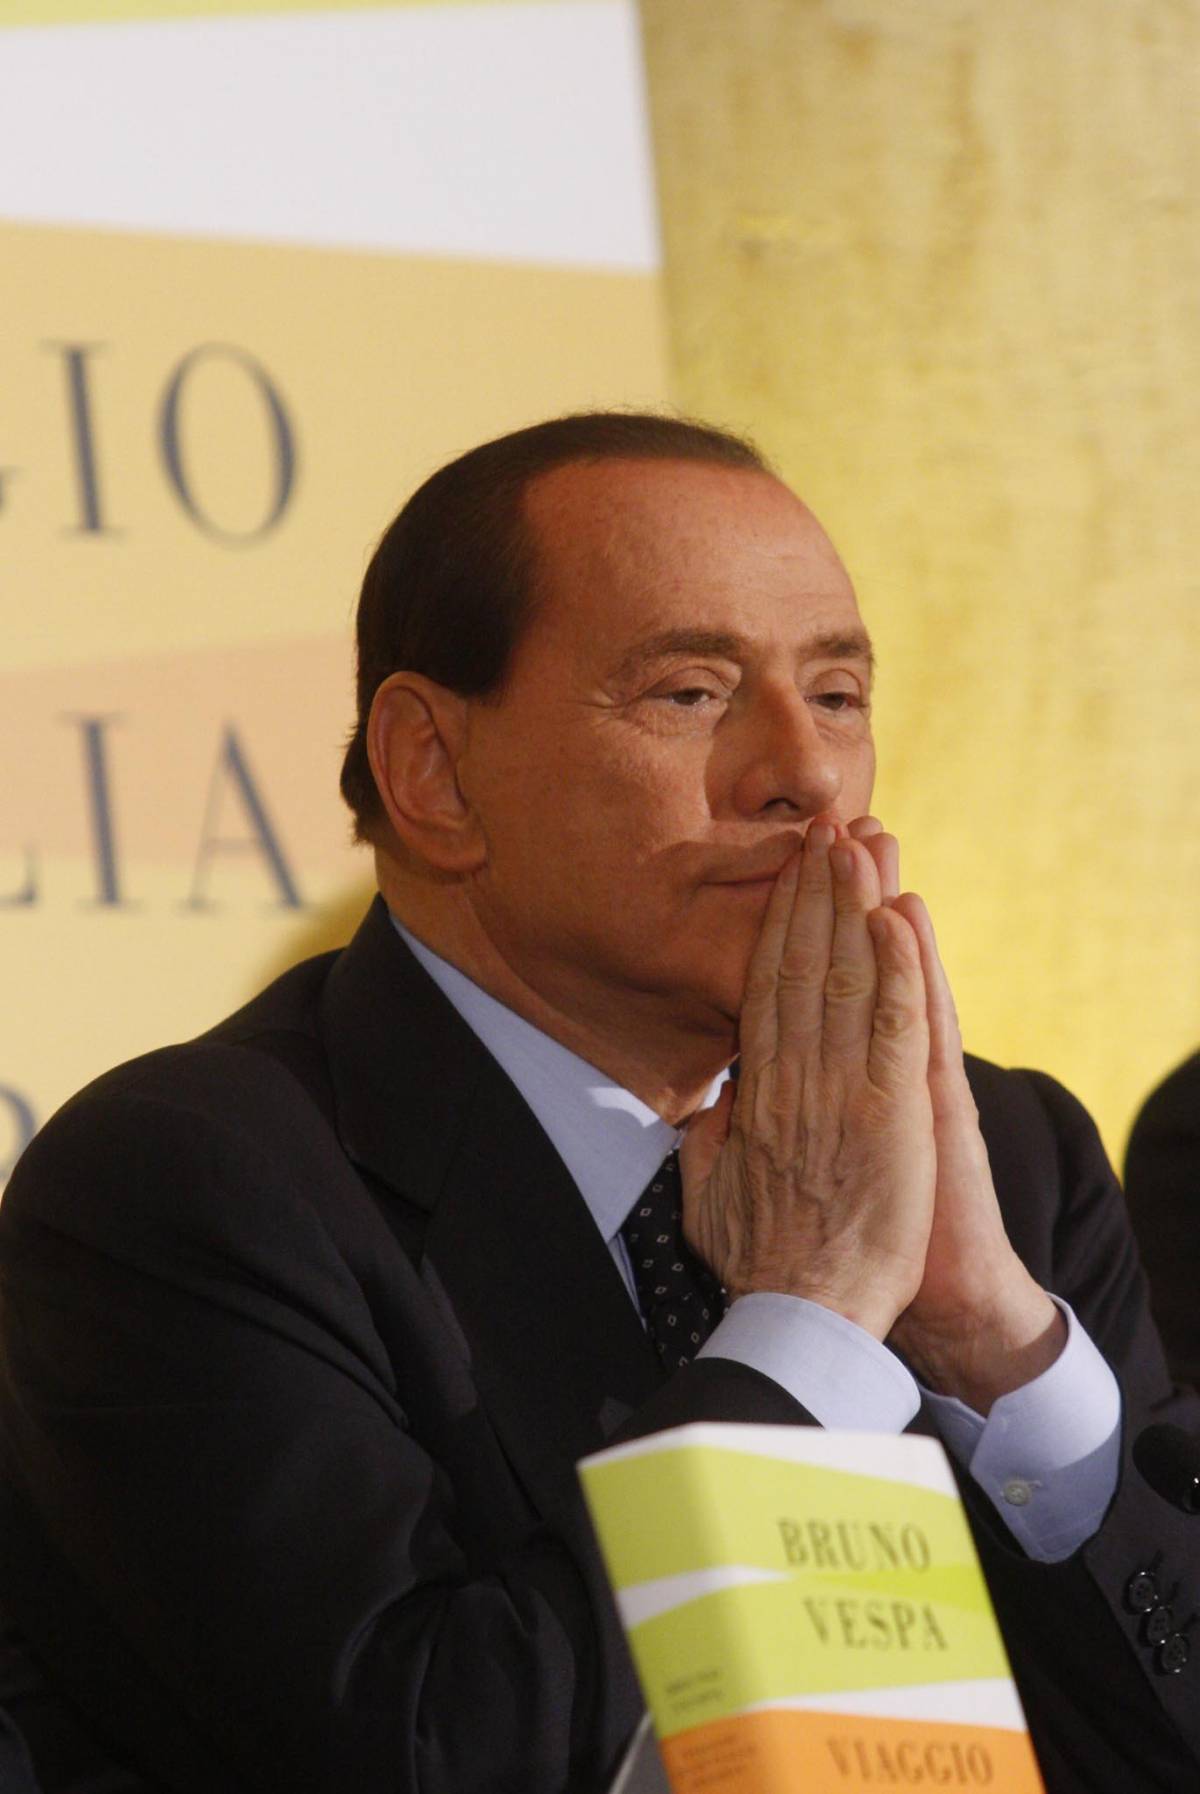 Giustizia, Berlusconi: "Cambiare la Costituzione"